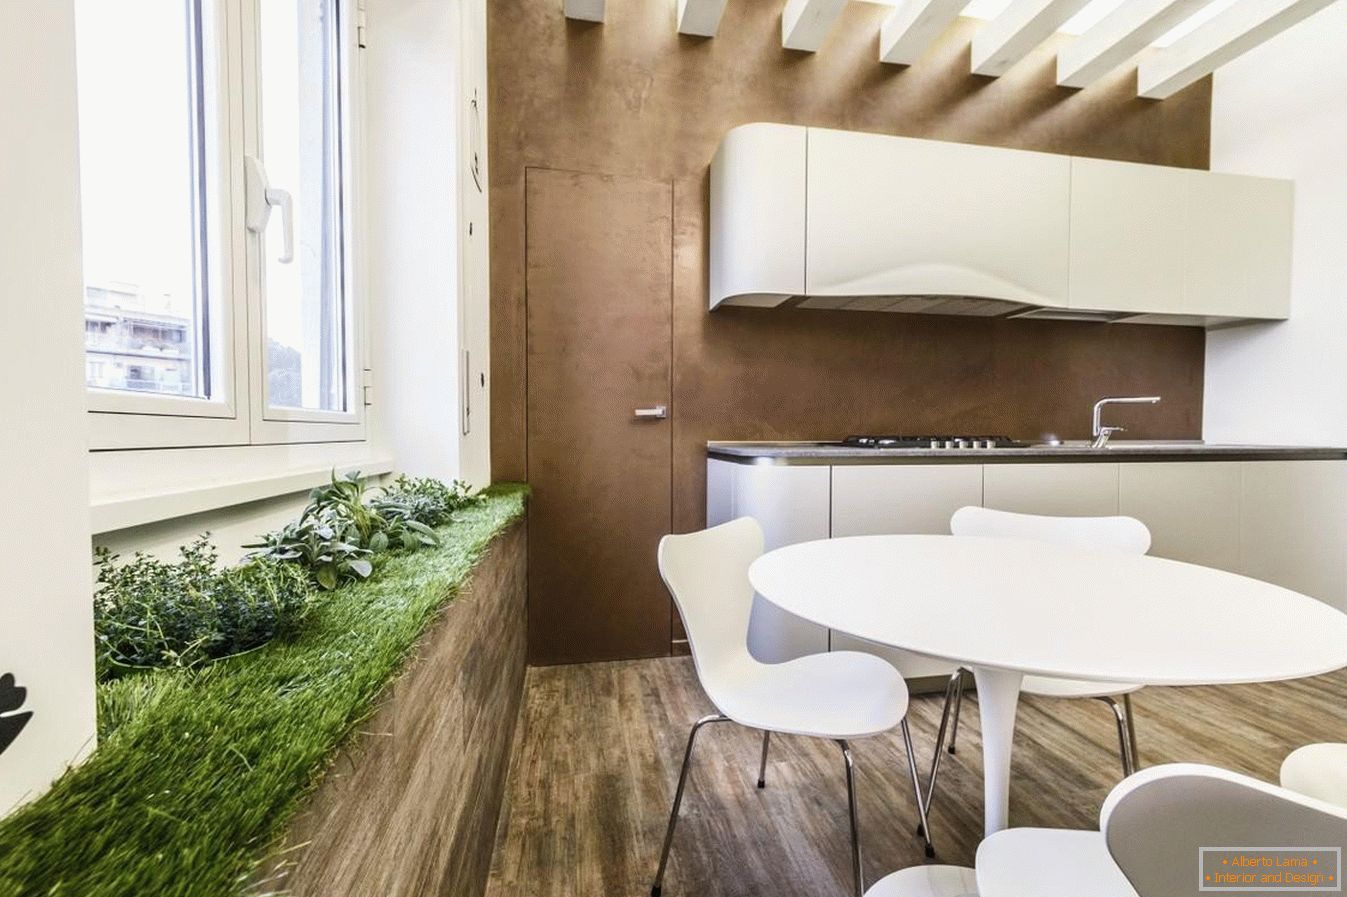 Grünfläche in der Küche für Öko-Stil